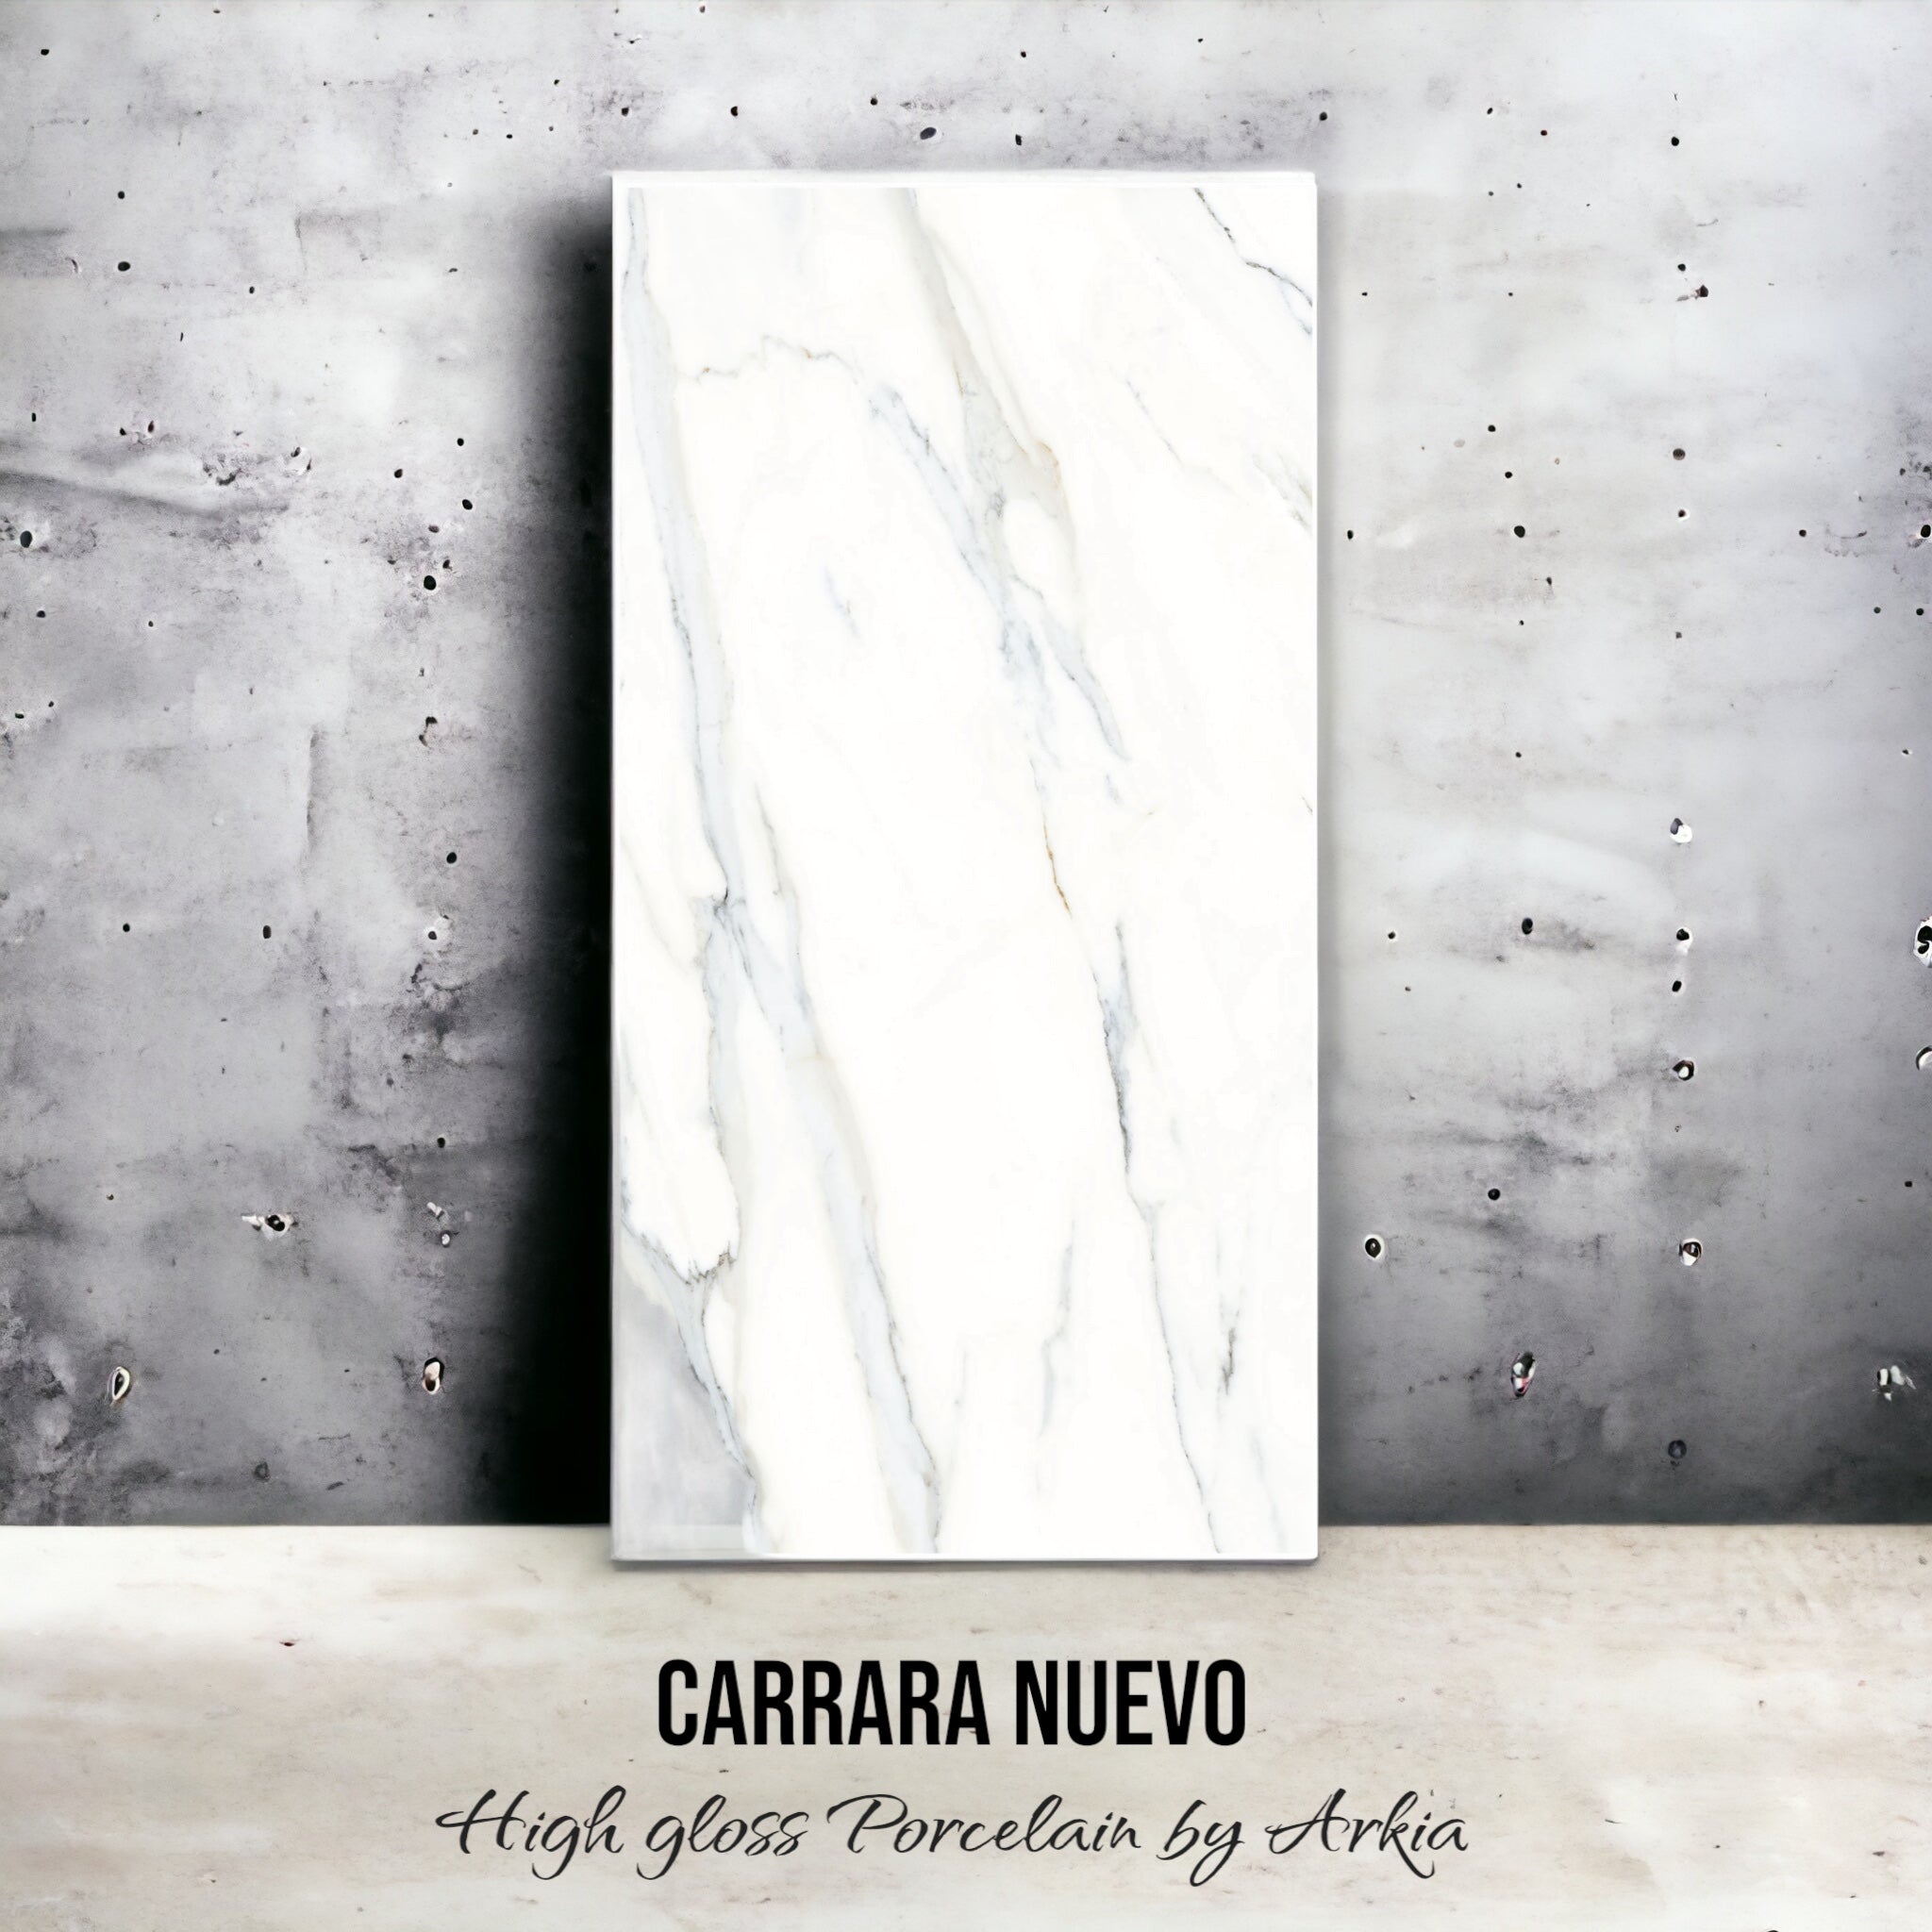 Carrara Nuevo